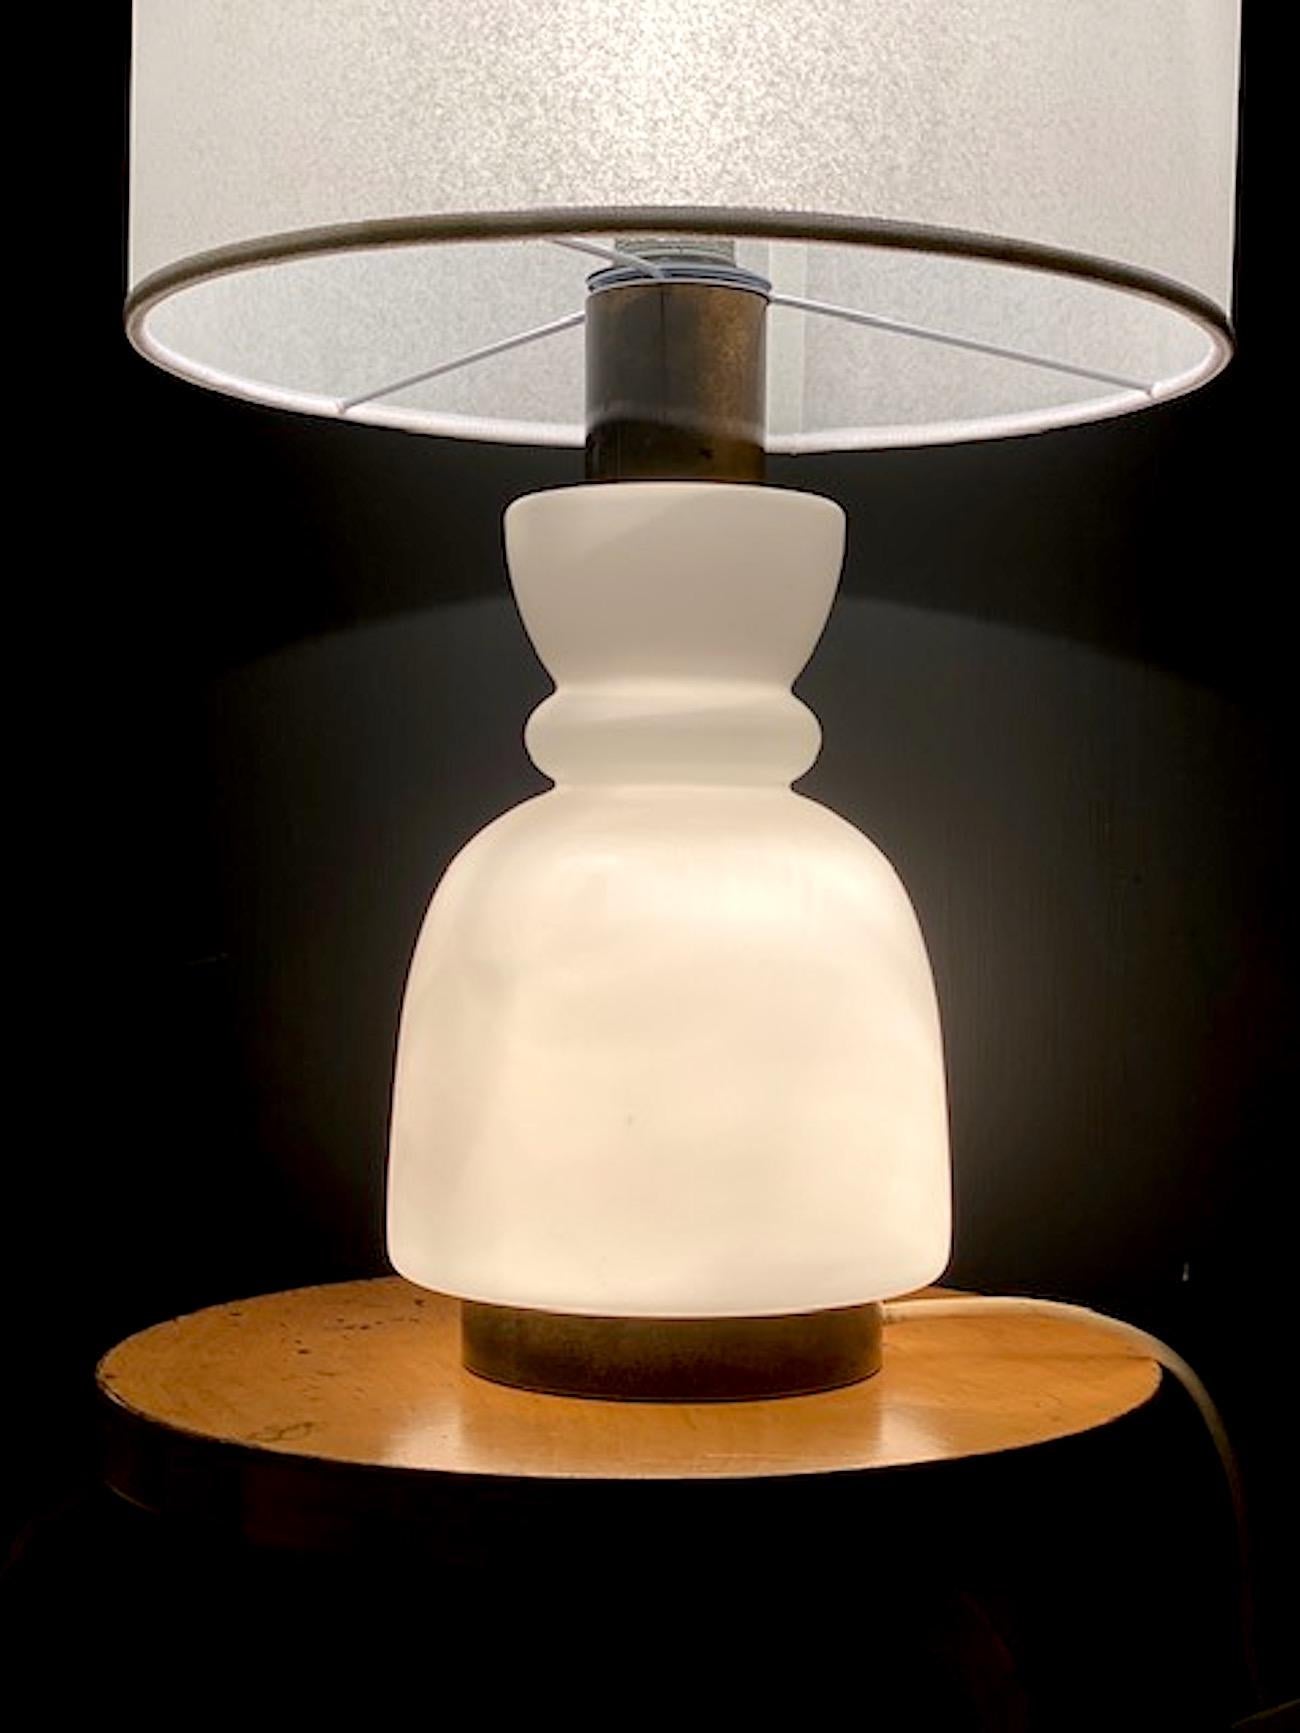 Lampe de table italienne en verre et laiton, datant de la fin des années 1950 à 1960, attribuée à la célèbre société d'éclairage Stilnovo. La base s'allume et est faite de verre soufflé en forme de vase. La lampe a des montures en laiton avec une